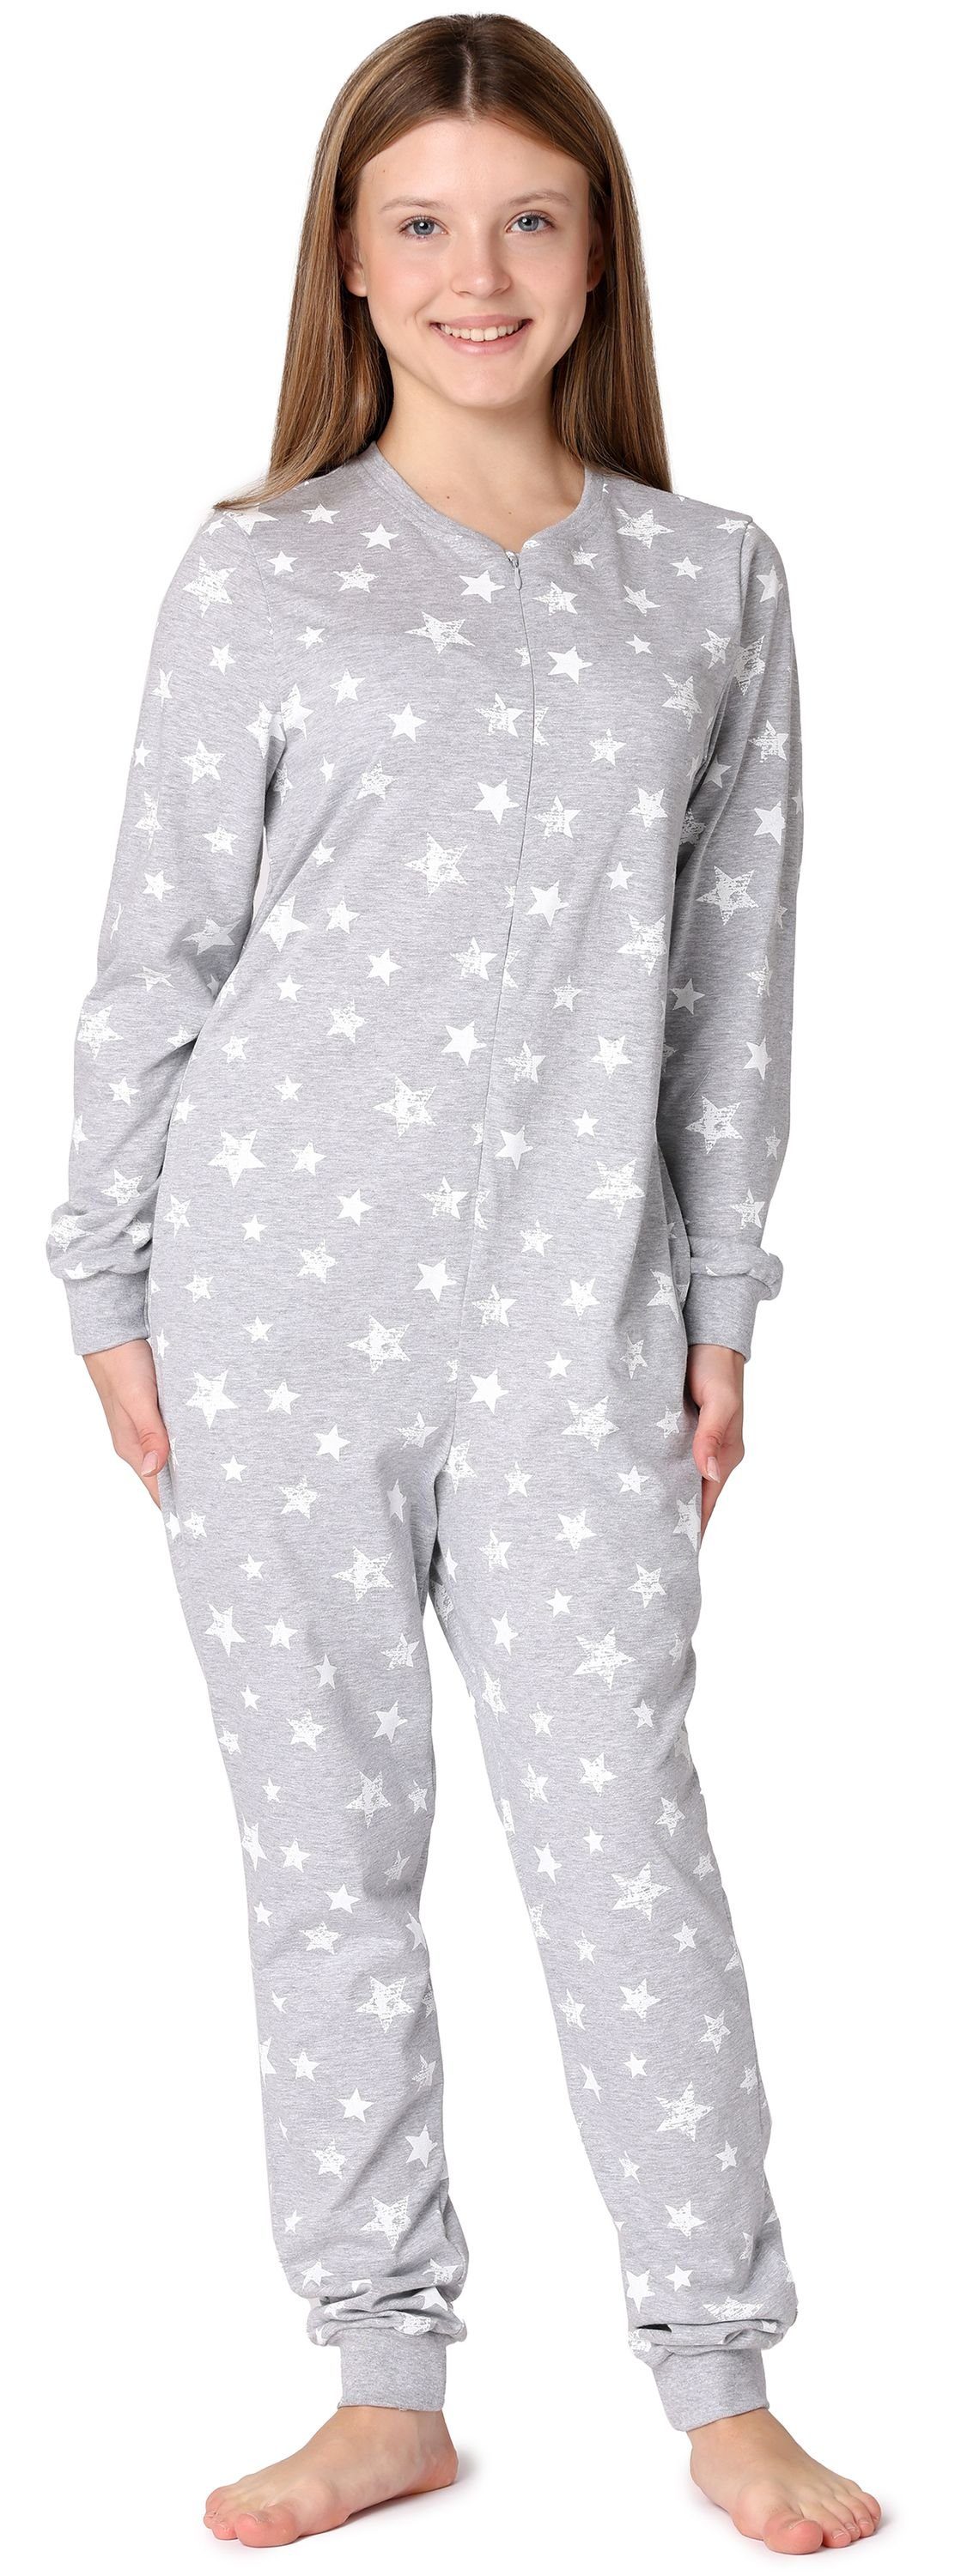 Merry Style MS10-235 Sterne Mädchen Jugend Melange/Ecru Schlafoverall Schlafanzug Schlafanzug